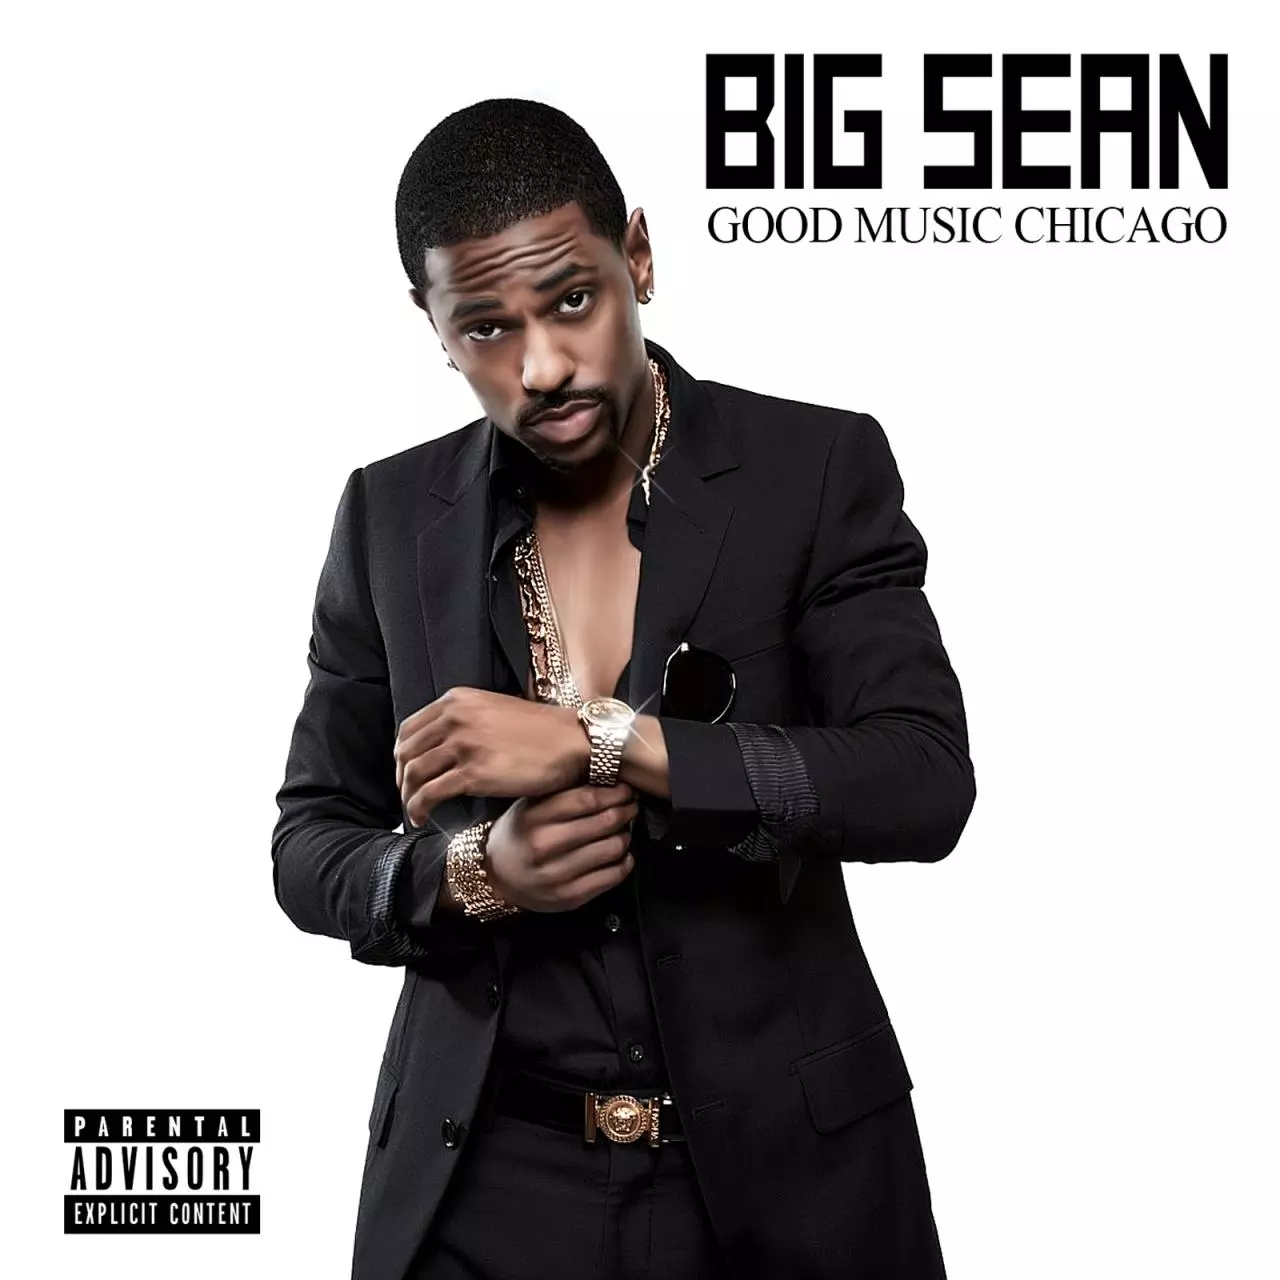 Release “Good Music Chicago” by Big Sean - MusicBrainz